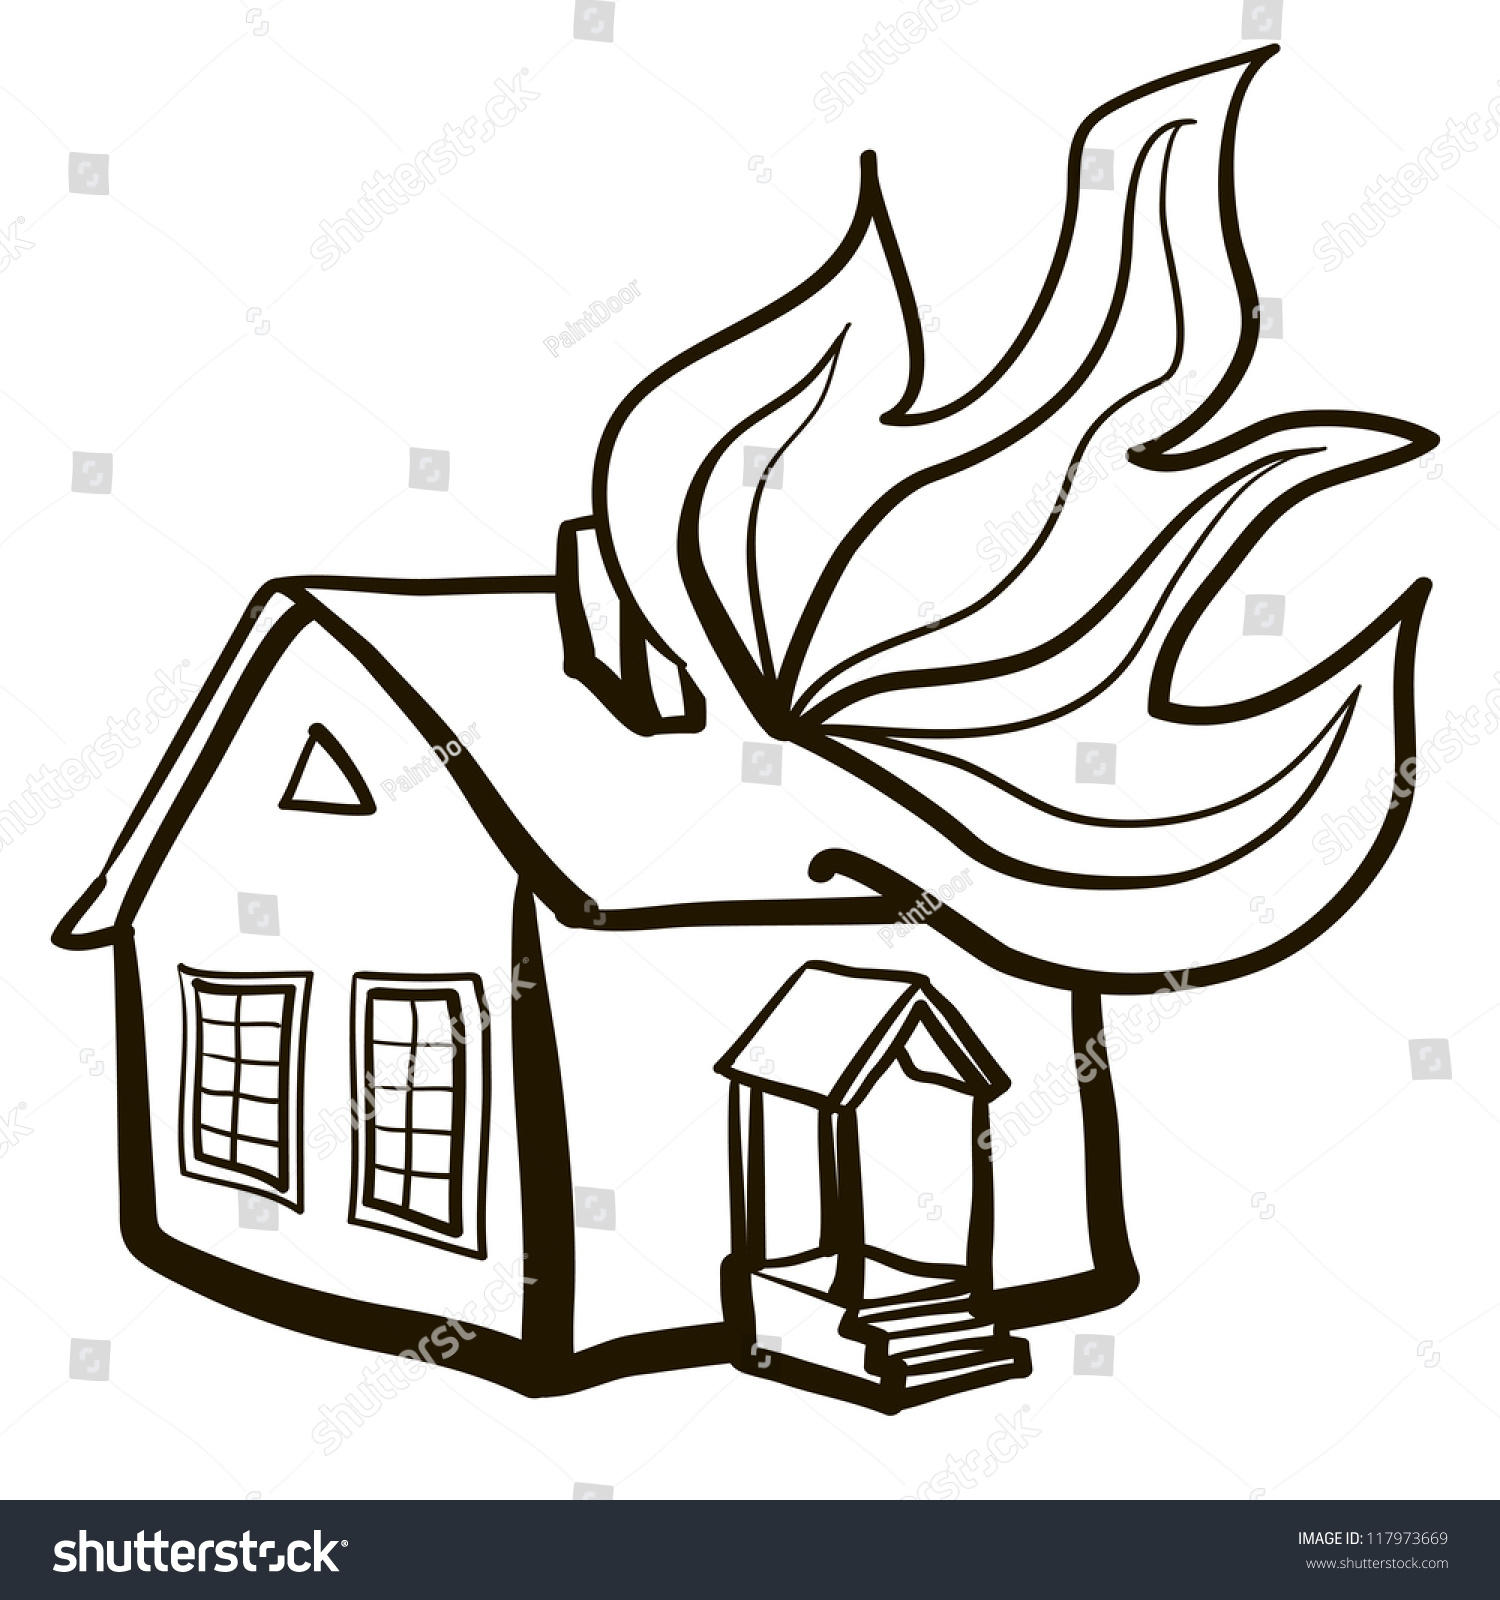 clipart burning house - photo #10